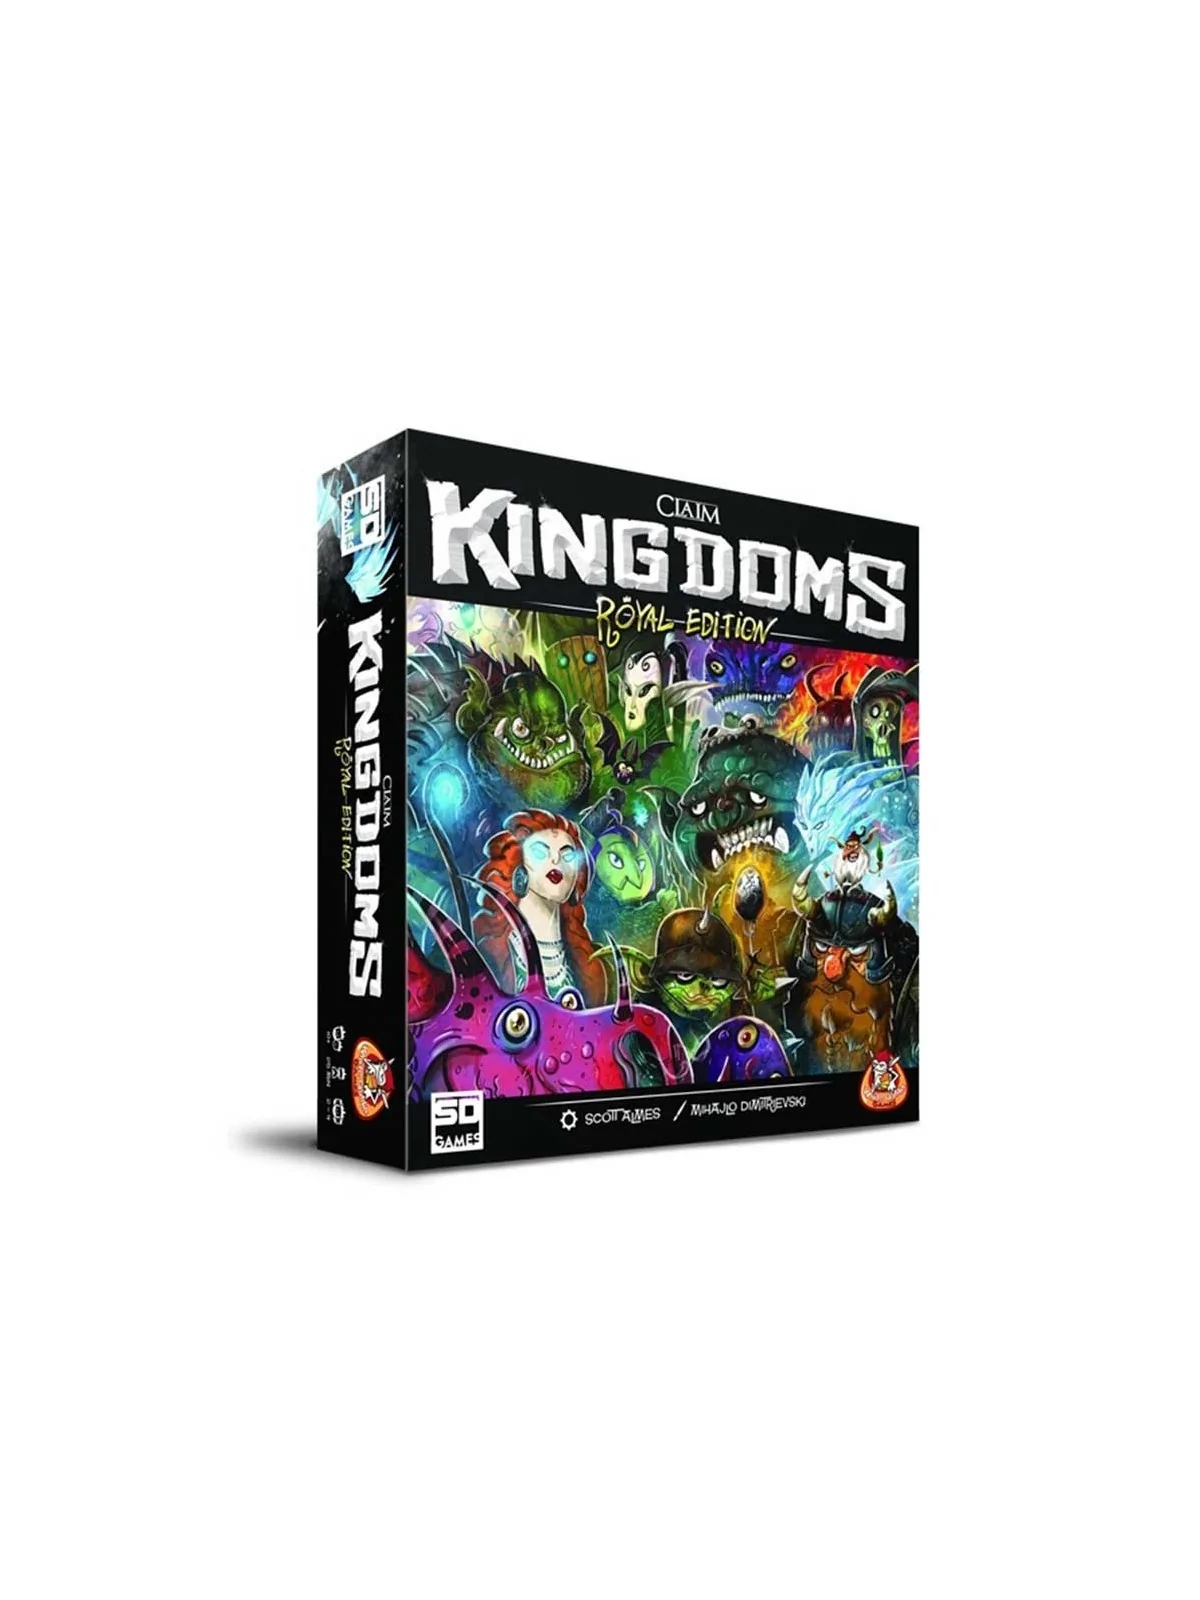 Comprar Claim Kingdoms Royal Edition barato al mejor precio 44,96 € de